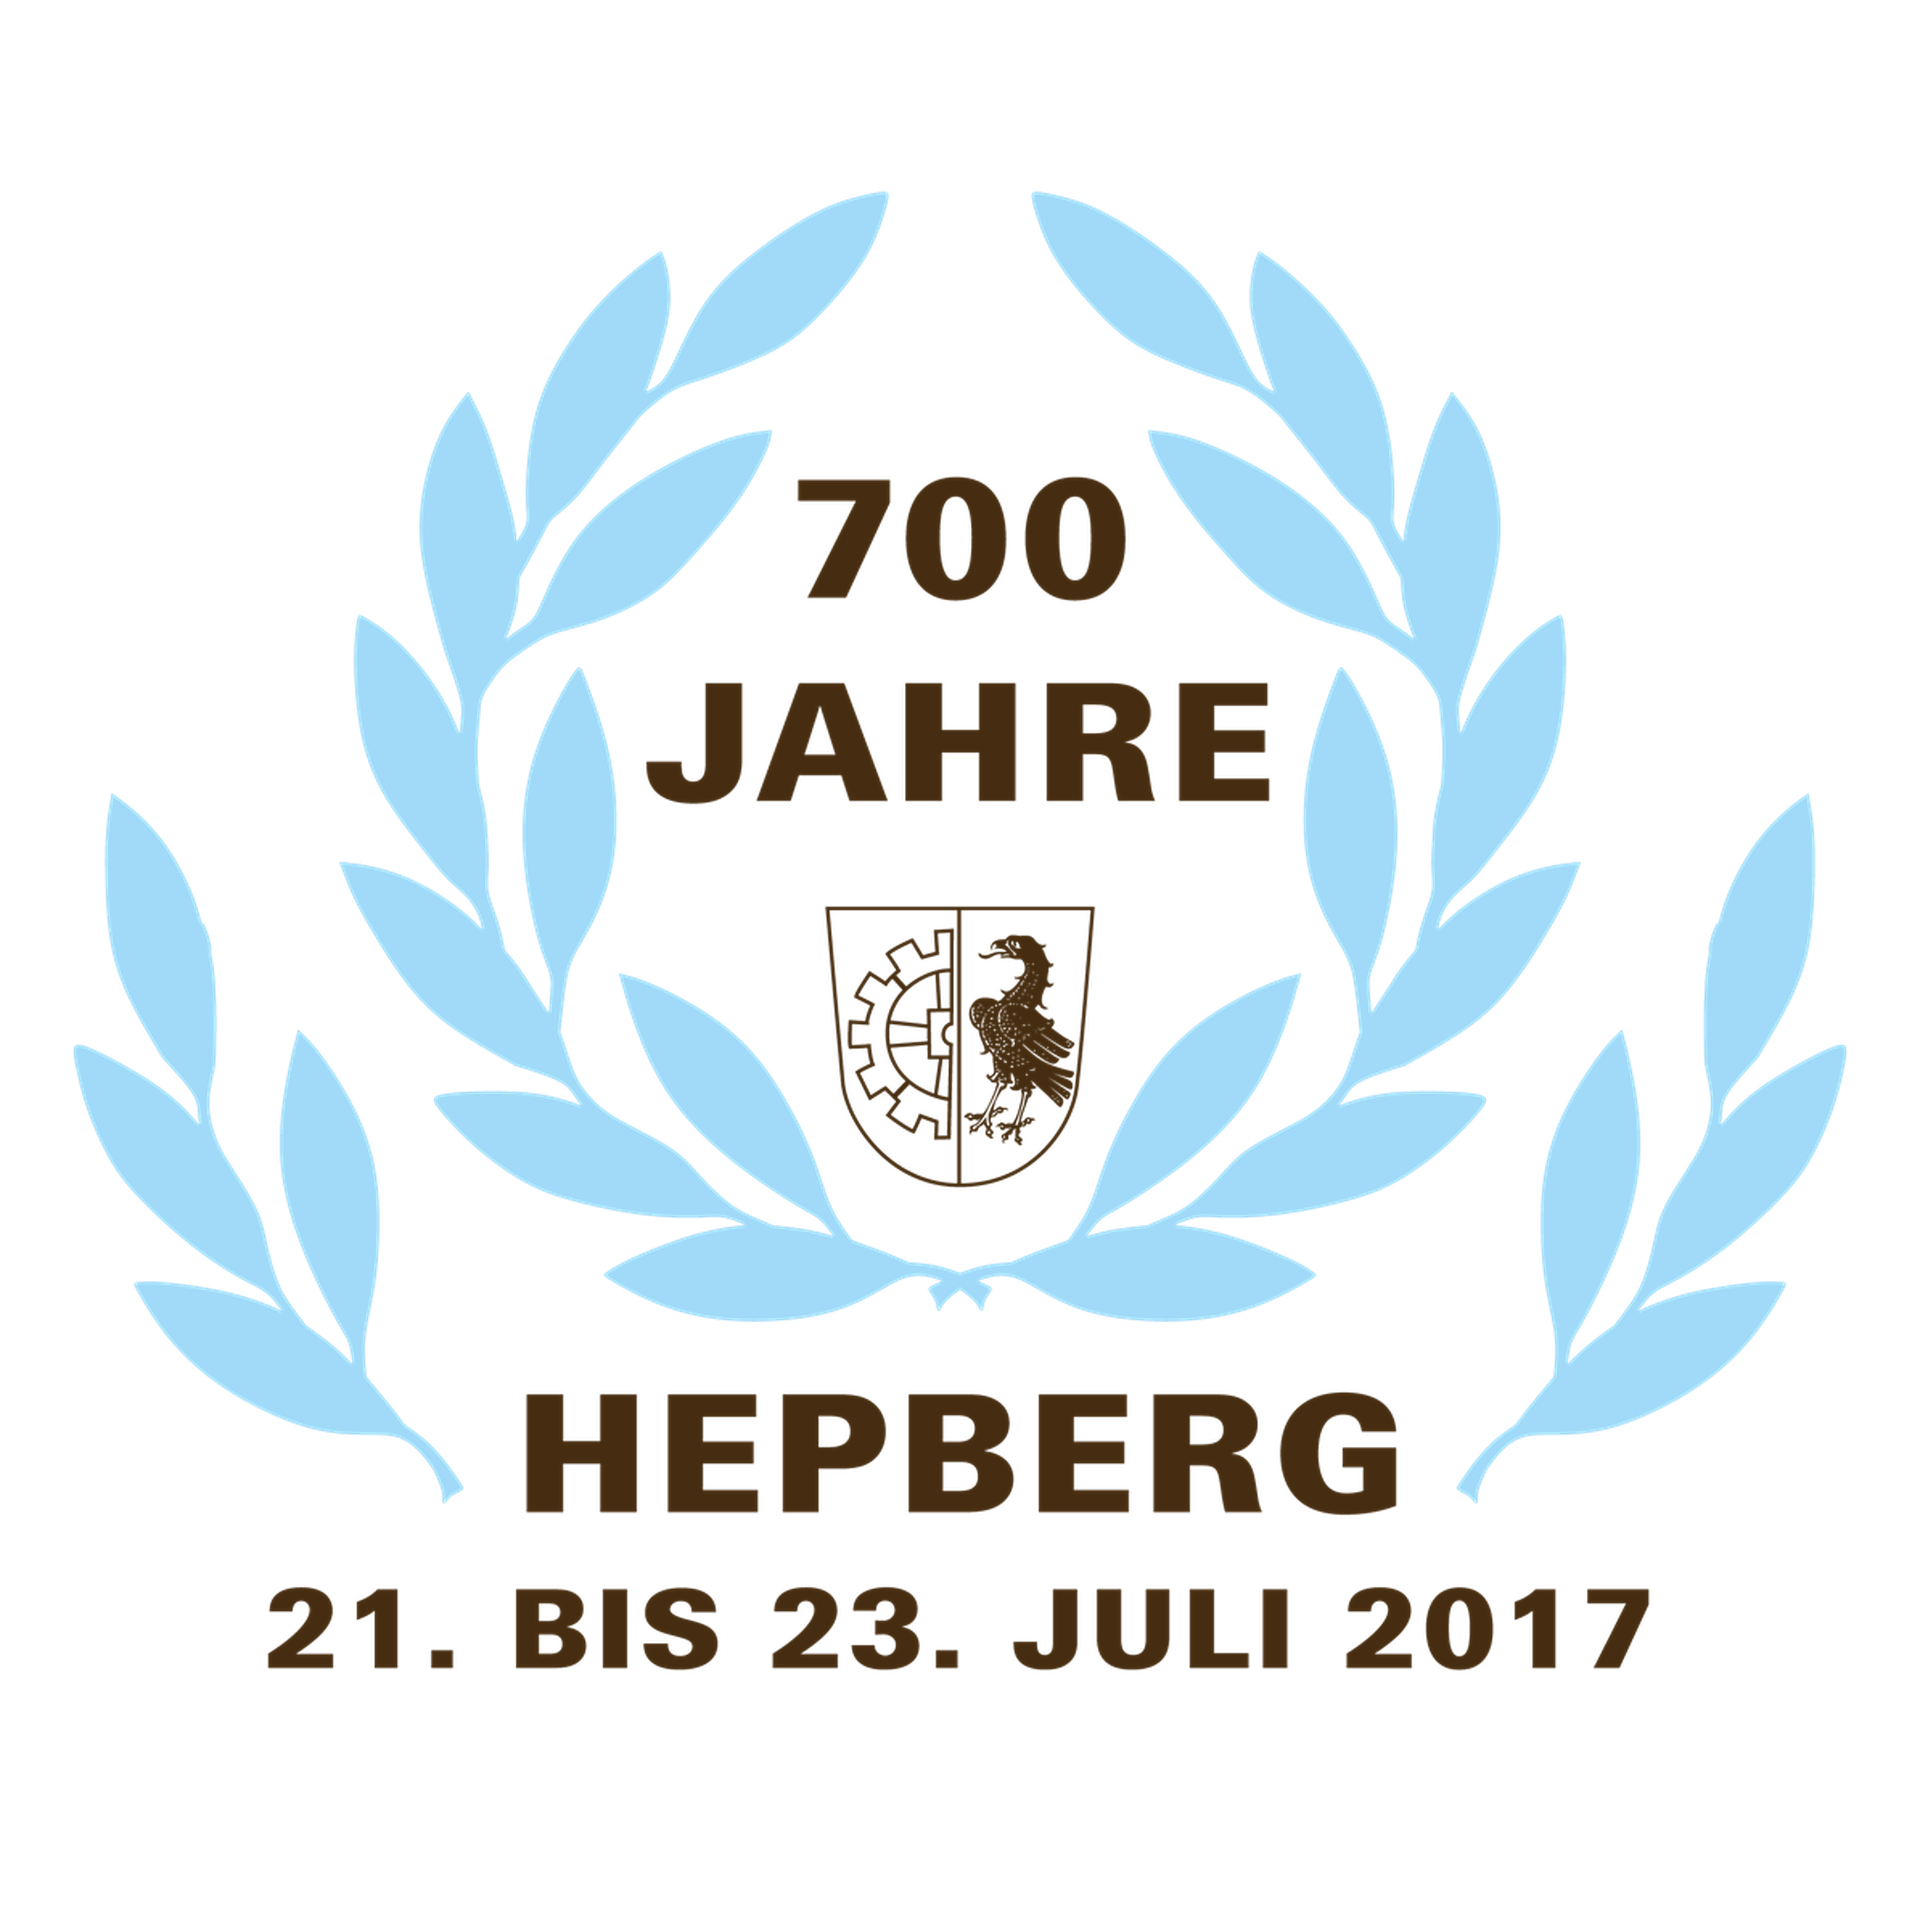 700-Jahr Feier Hepberg 2017